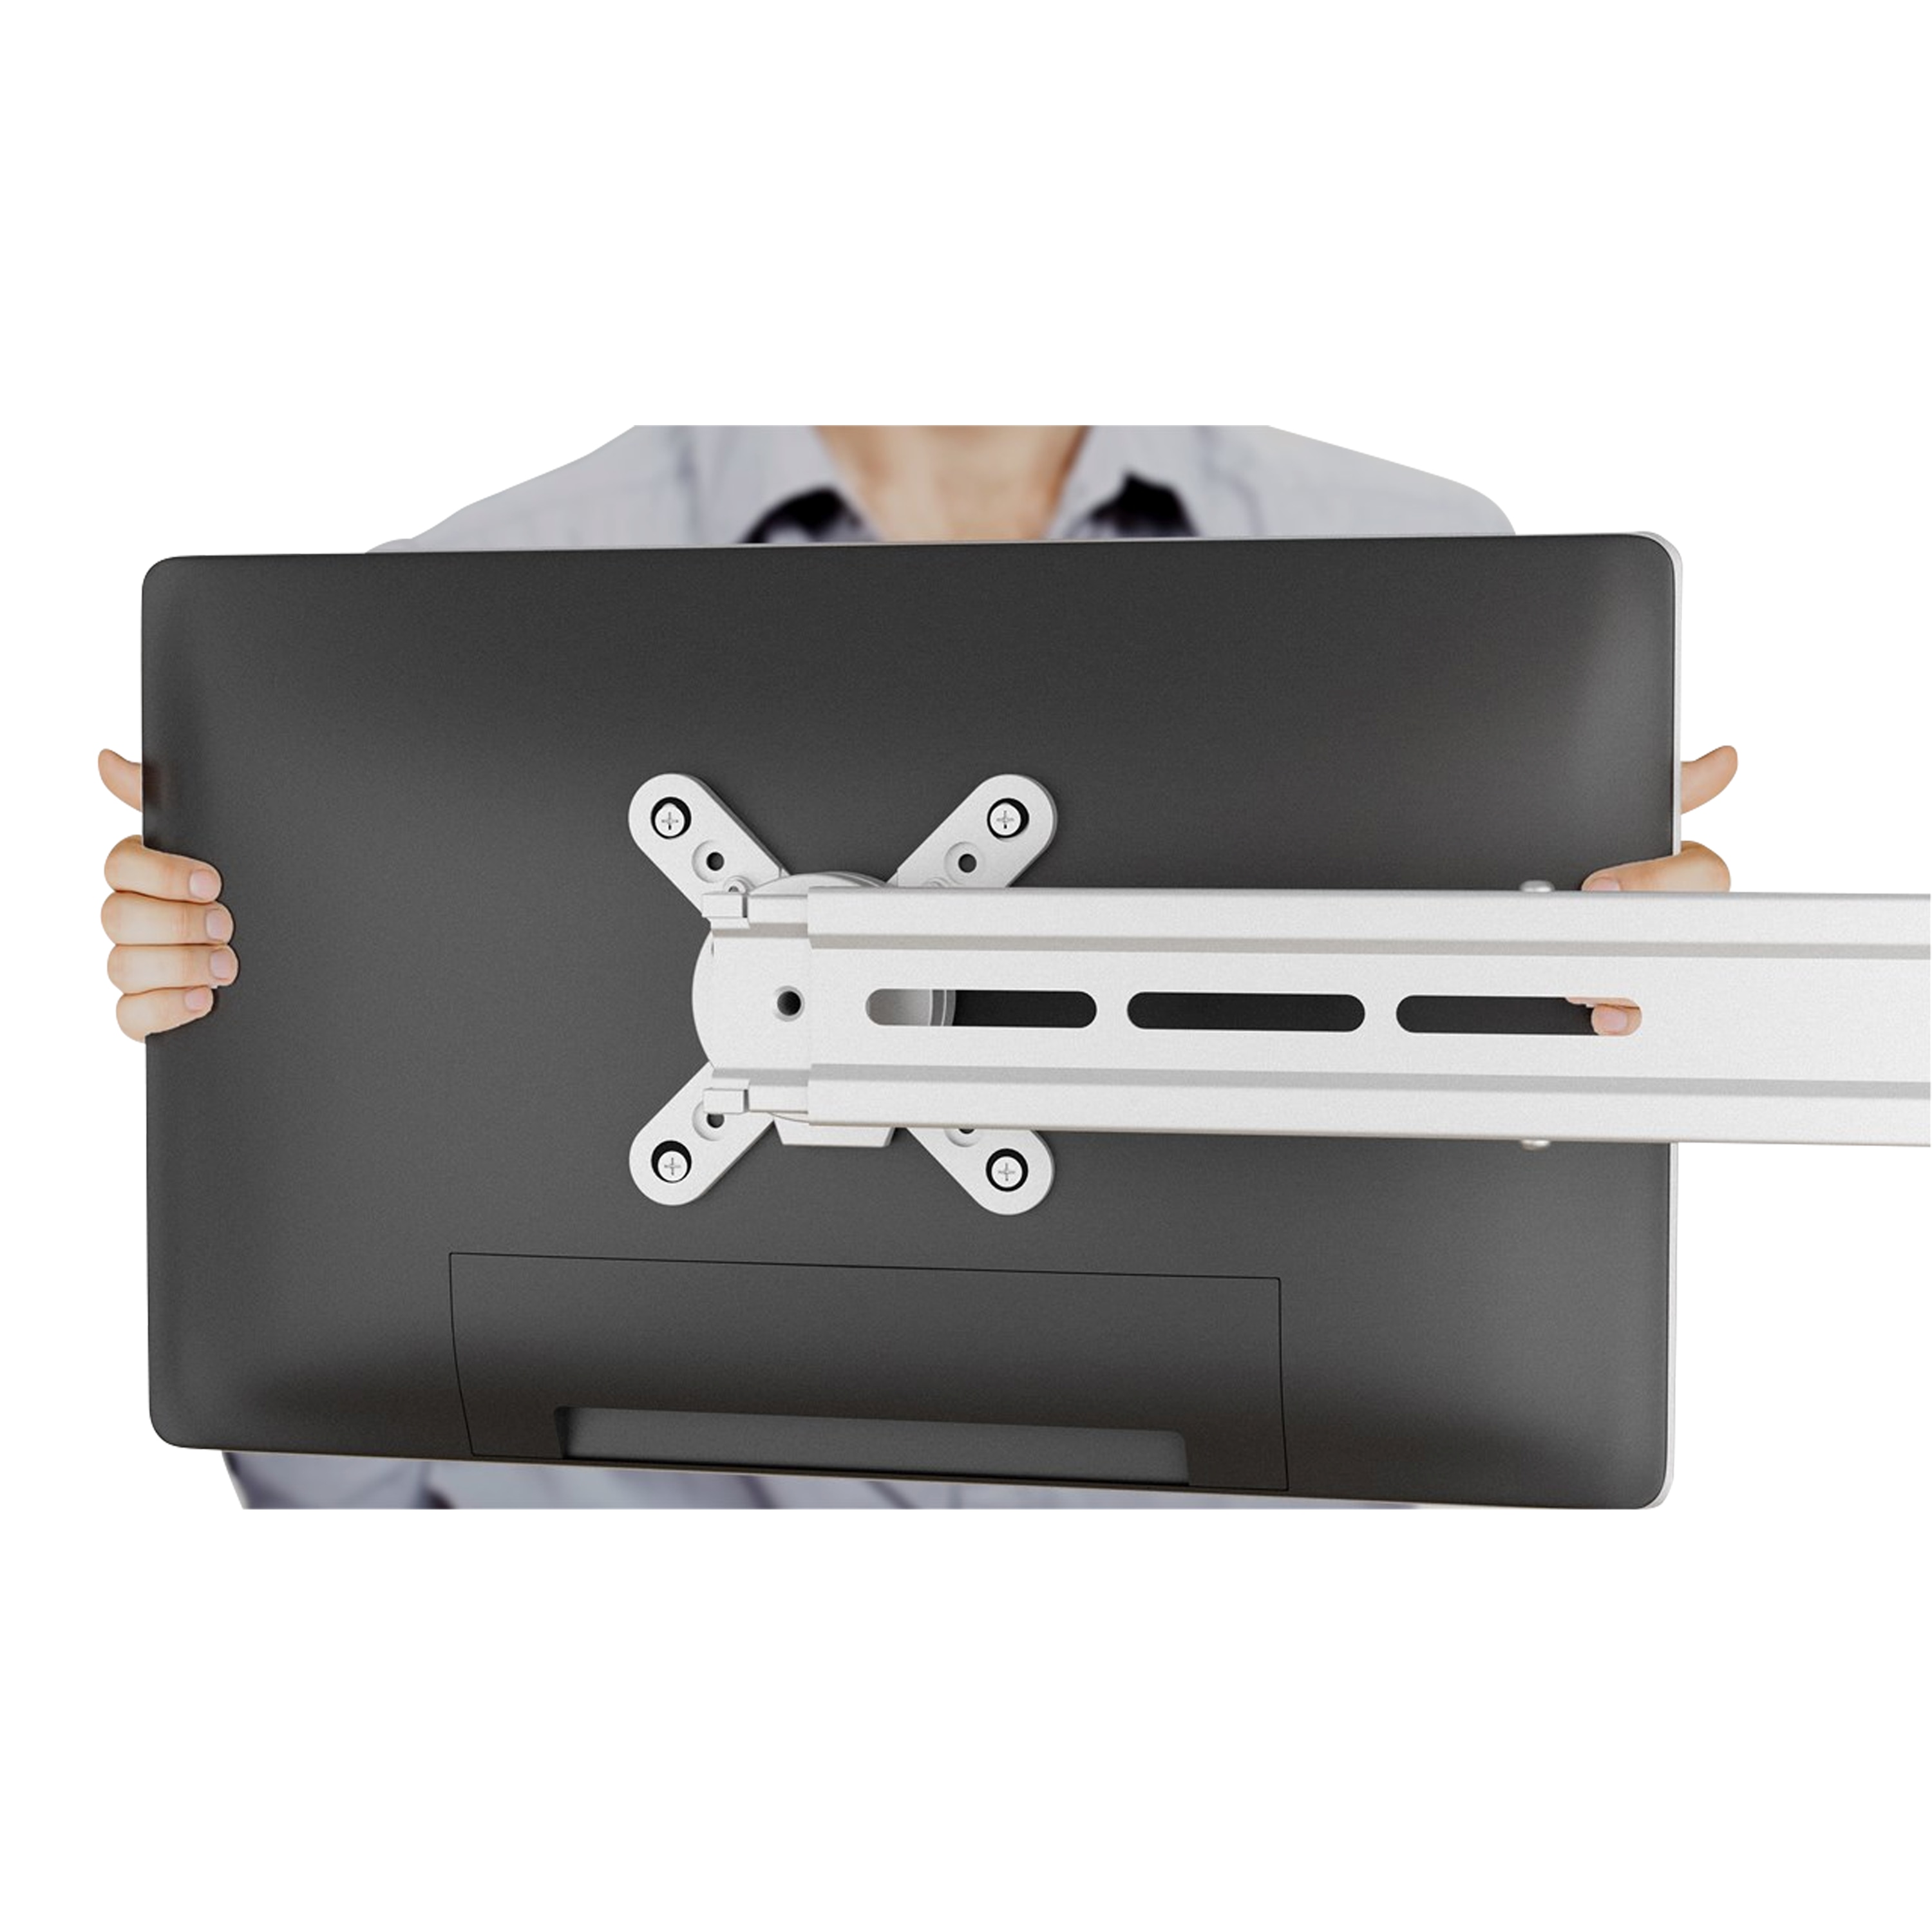 GOOBAY ScreenFlex TWIN Monitorhalterung, für alle Monitore von 33-58 cm (13-23''), zur Tischmontage für zwei Bildschirme, höhenverstellbar, schwenkbar und neingbar, bis 8kg